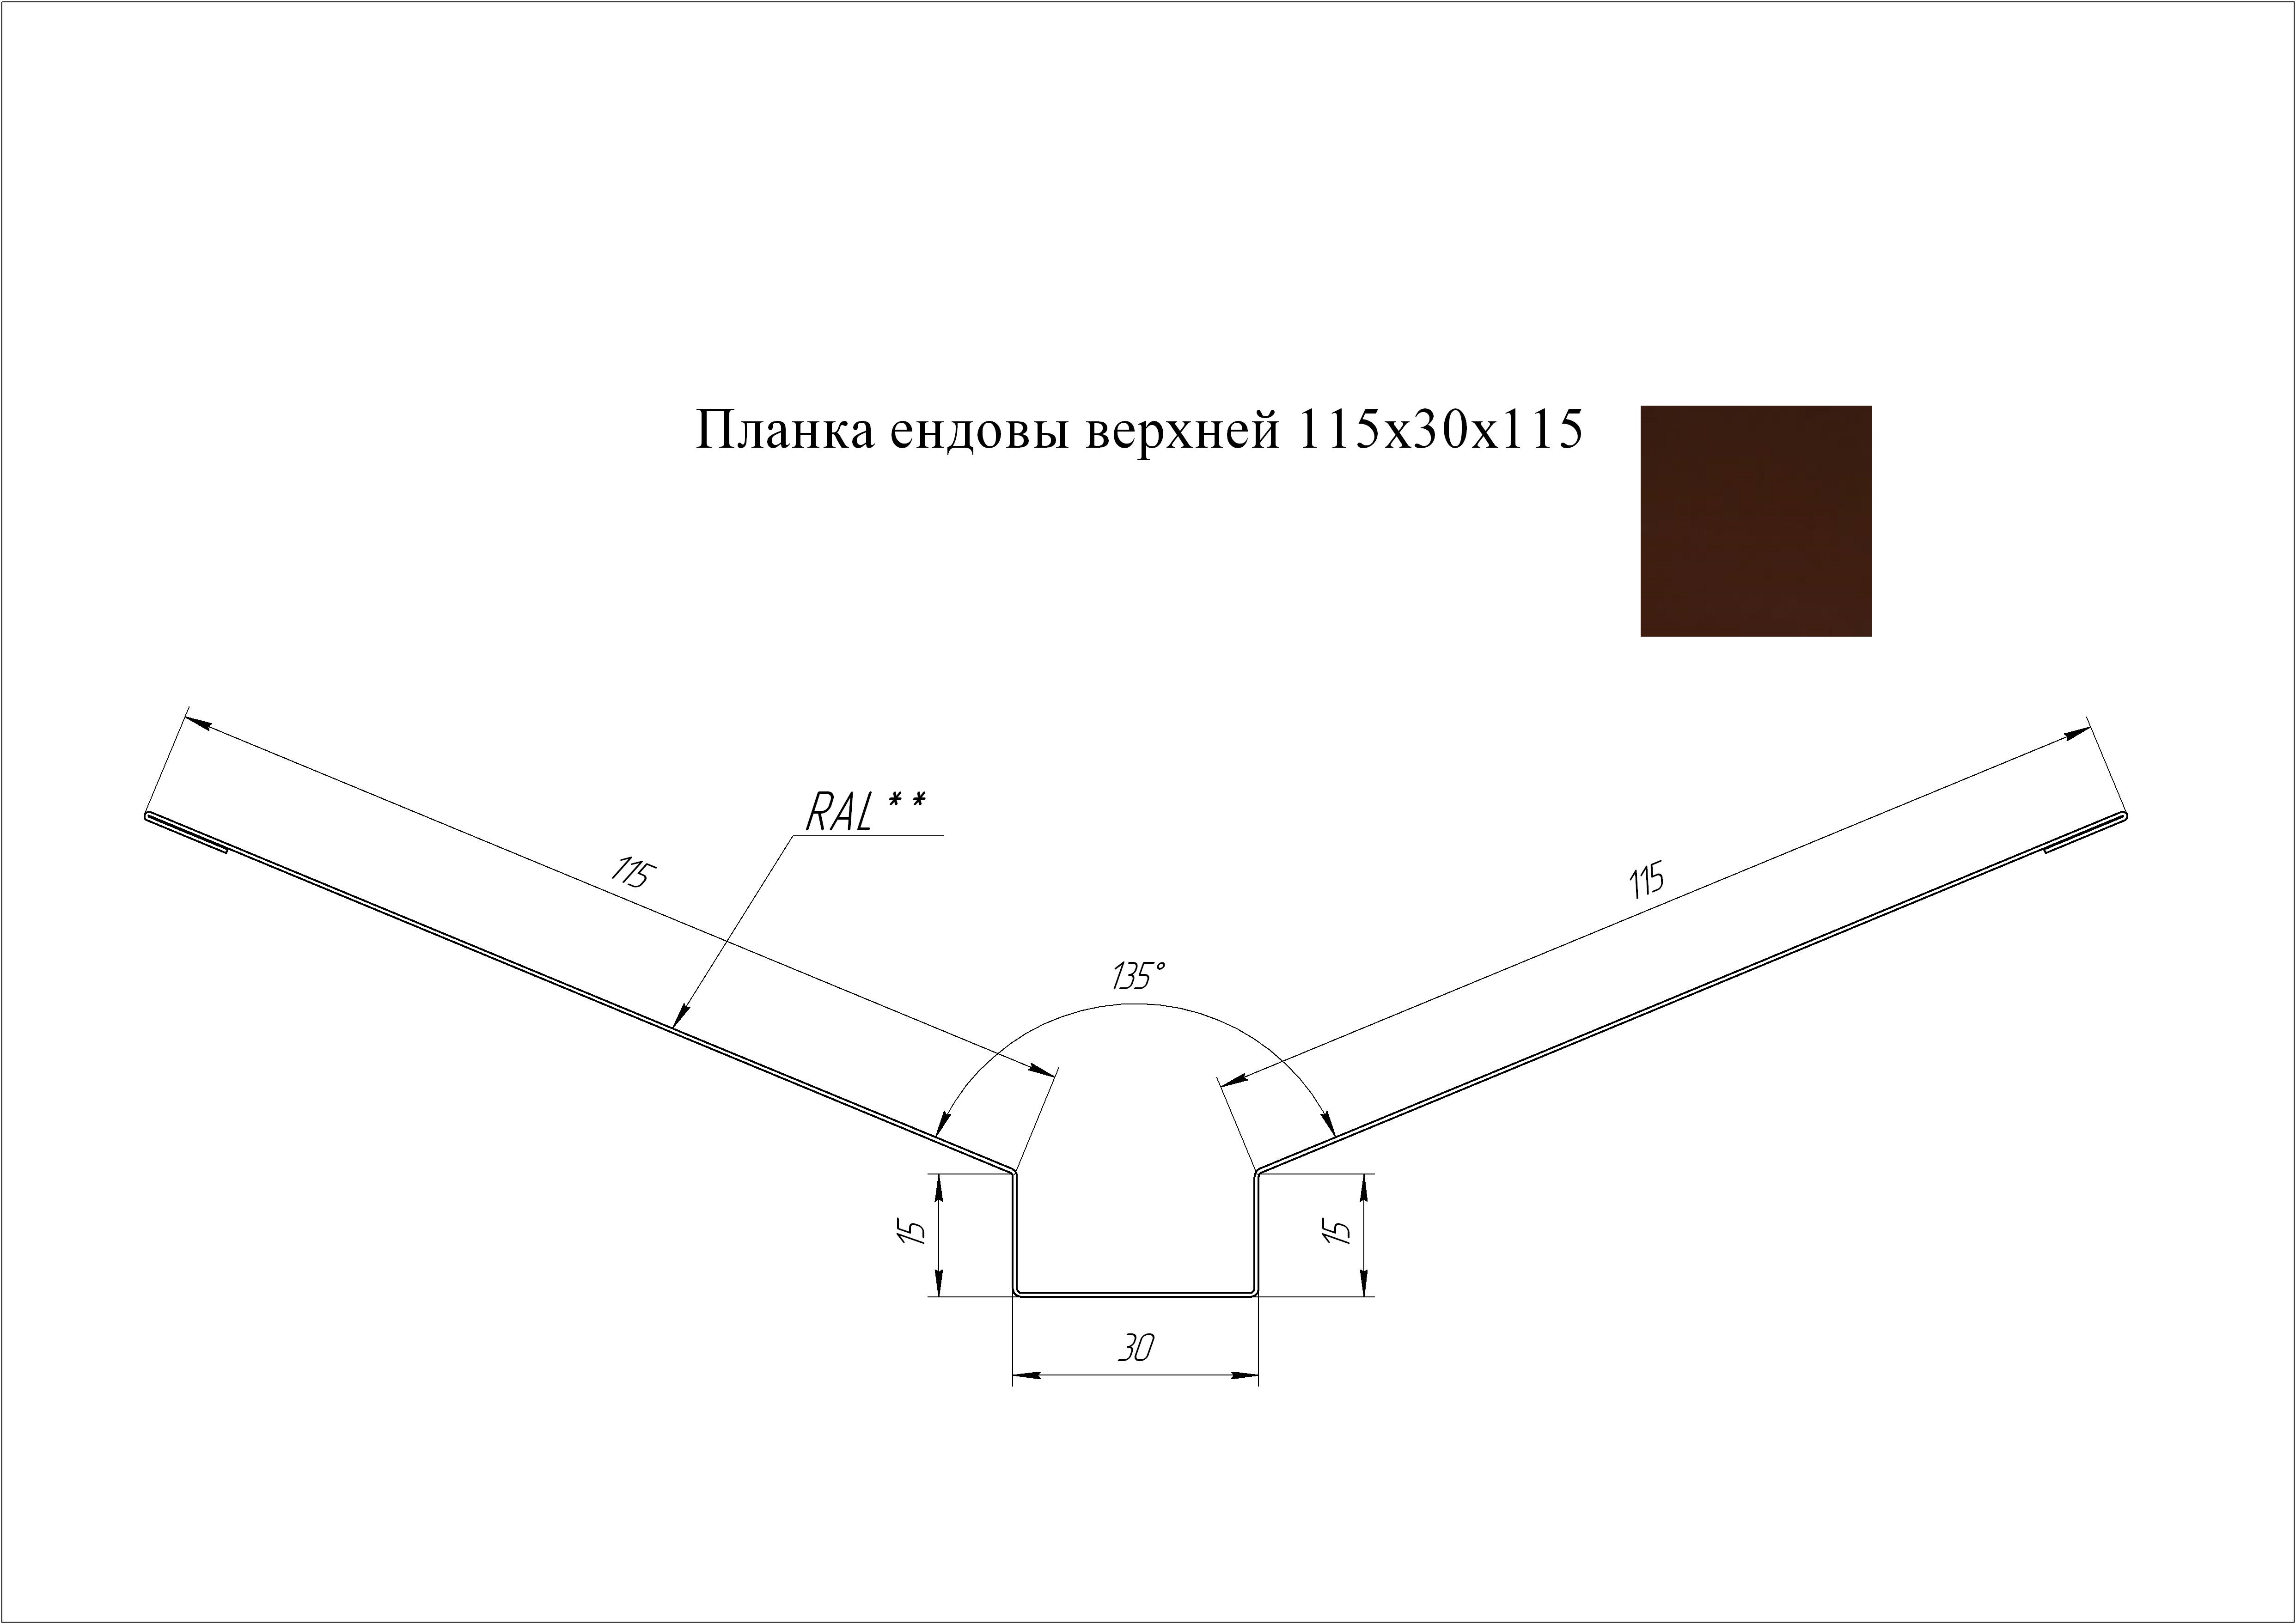 Ендова верхняя 115*30*115 мм L=3 м GL Drap 0,45 RAL 8017 - коричневый шоколад